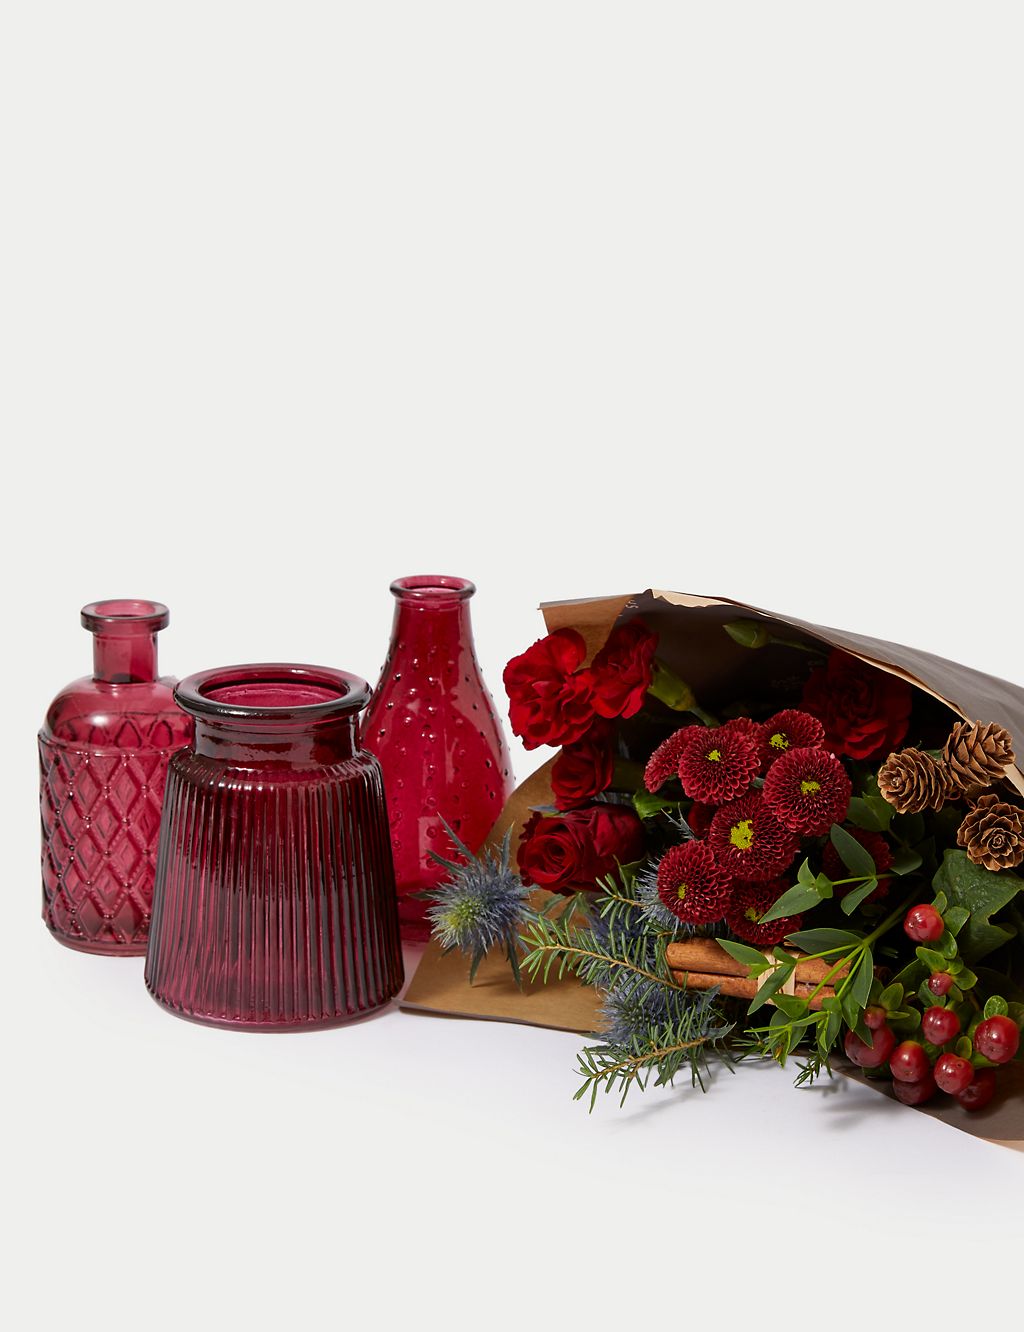 Festive Posies in Scarlet Bud Vases 4 of 7